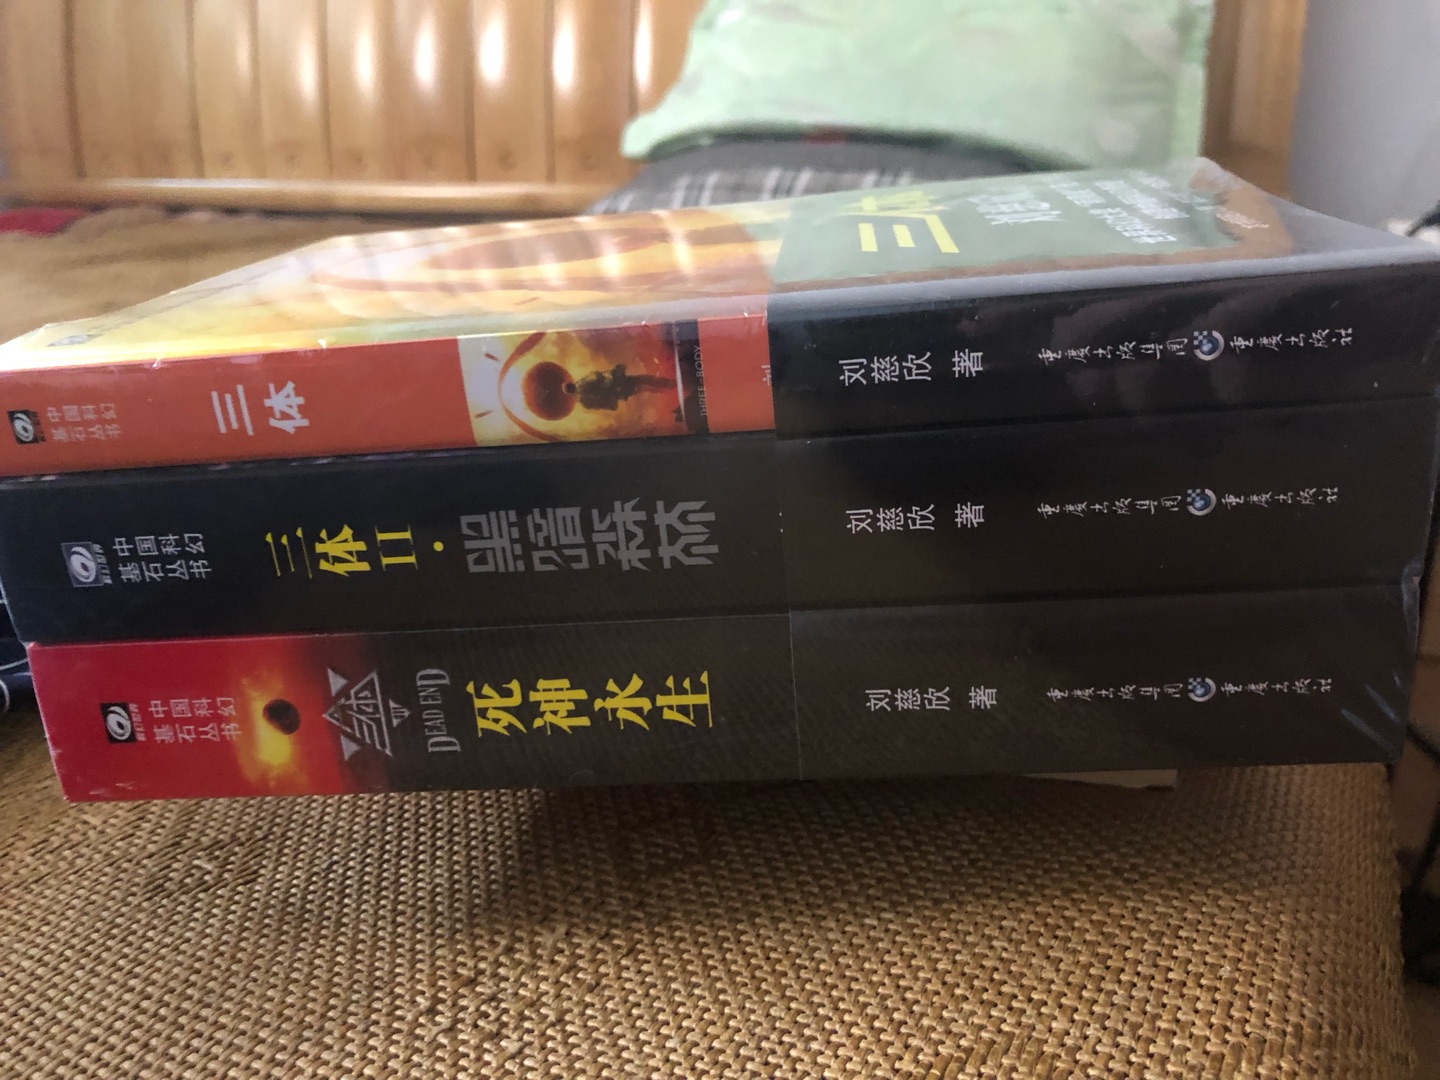 首先说价钱，没有做活动的时候买书确实不怎么便宜，并且这不是典藏版，只是普通阅读版。但是作为这么经典的书，没看过买这个没问题，看过想收藏就不要再买这个了，有更值得收藏的版本。至于书本身的内容，建议去搜一下，评分相当高，并且可以说是中国科幻第一书。